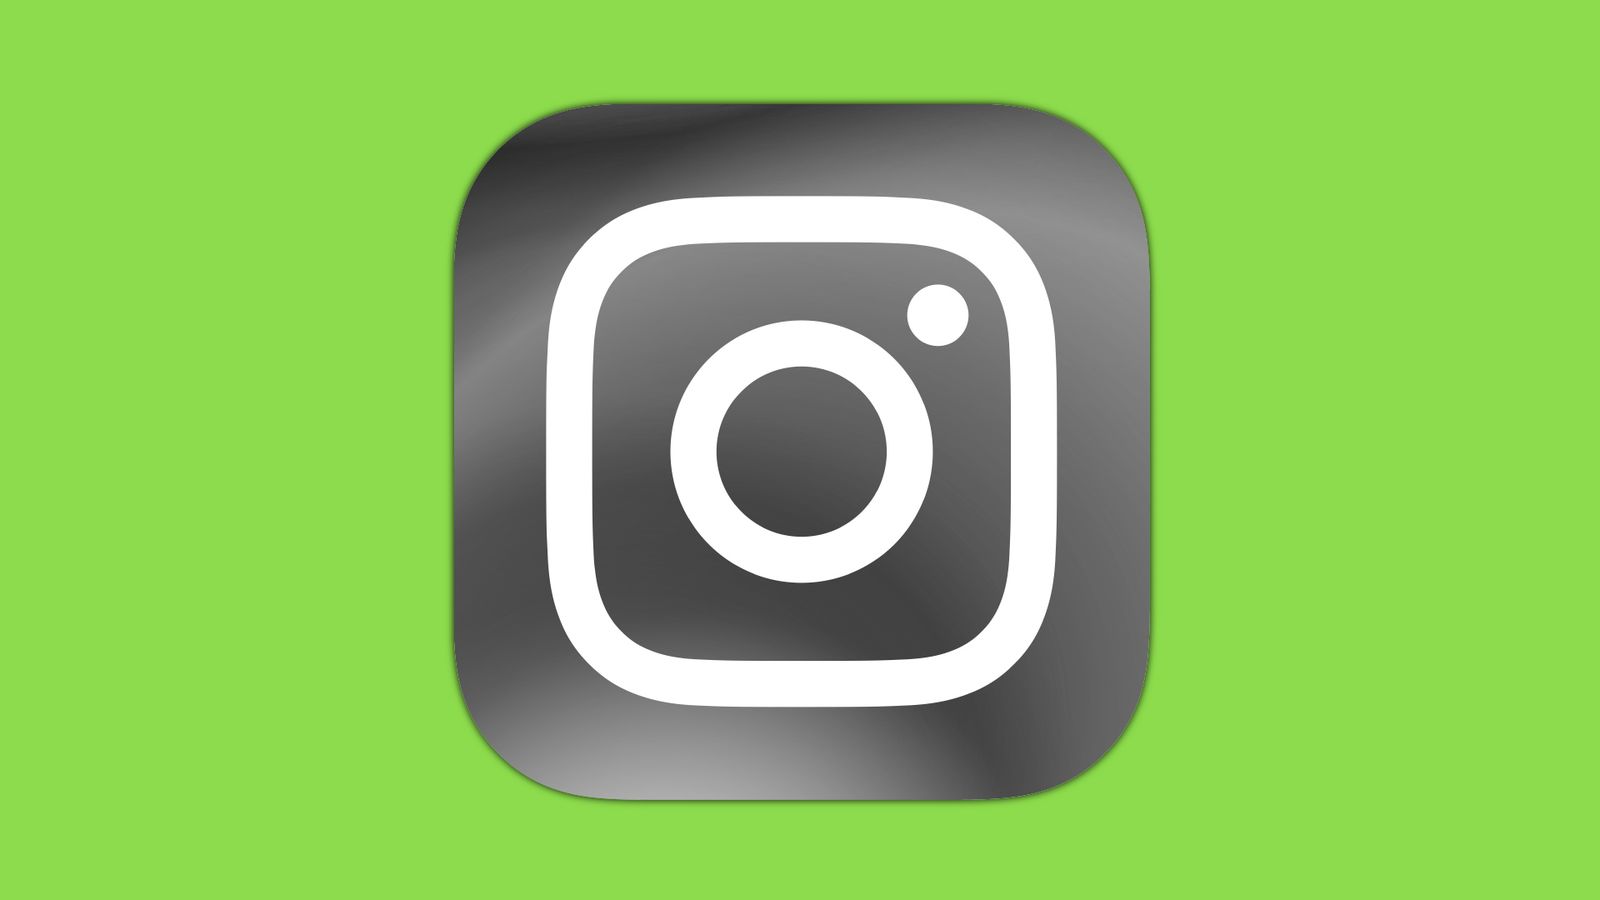 Instagram hợp nhất tính năng video ngắn của TikTok để mang đến trải nghiệm tuyệt vời cho người dùng. Tuy nhiên, nền xanh Instagram luôn là nơi thú vị để khám phá và tương tác với bạn bè và những người bạn mới.